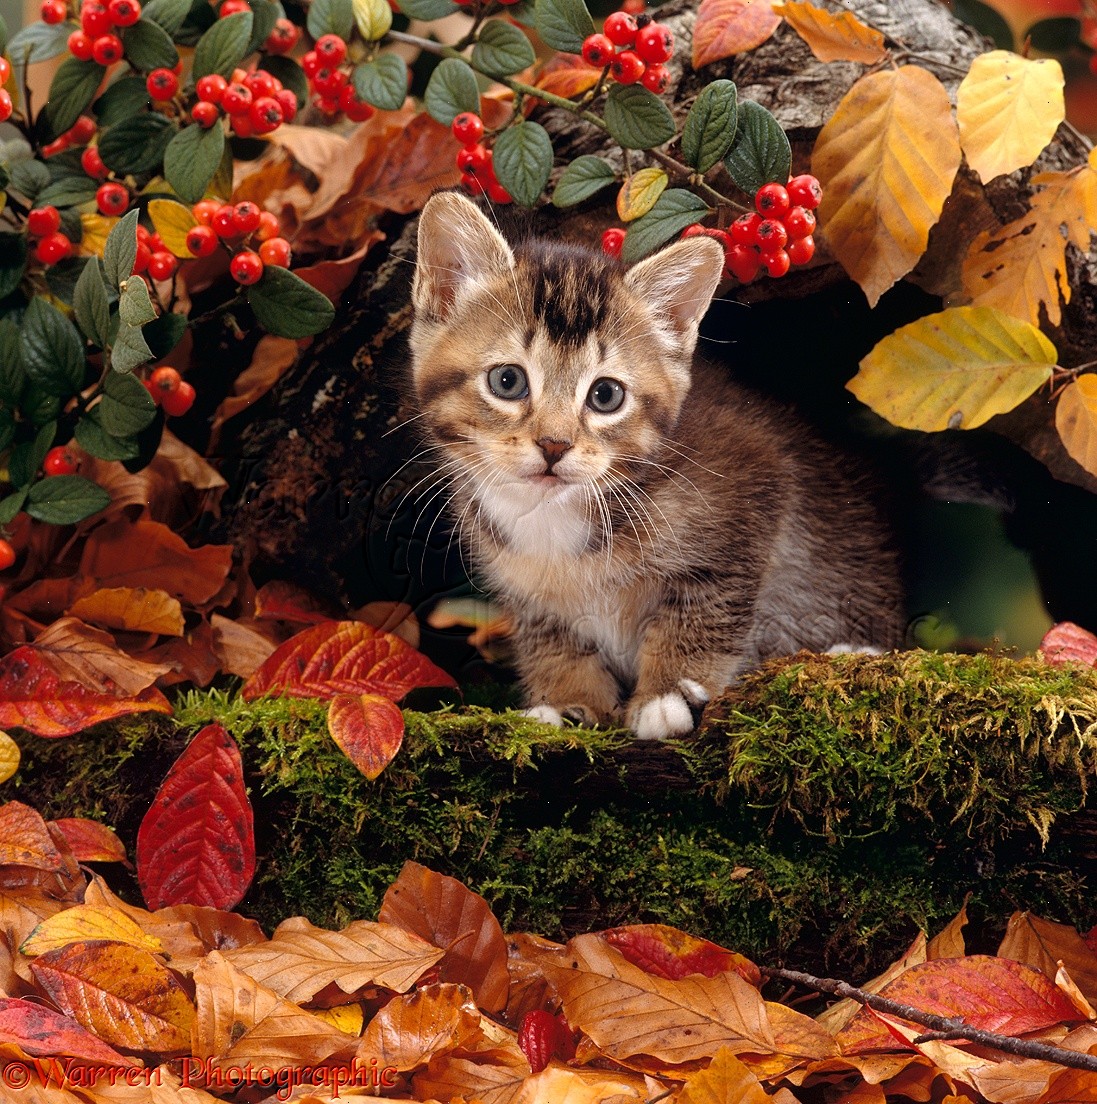 Tabby kitten among autumn leaves photo WP15904.